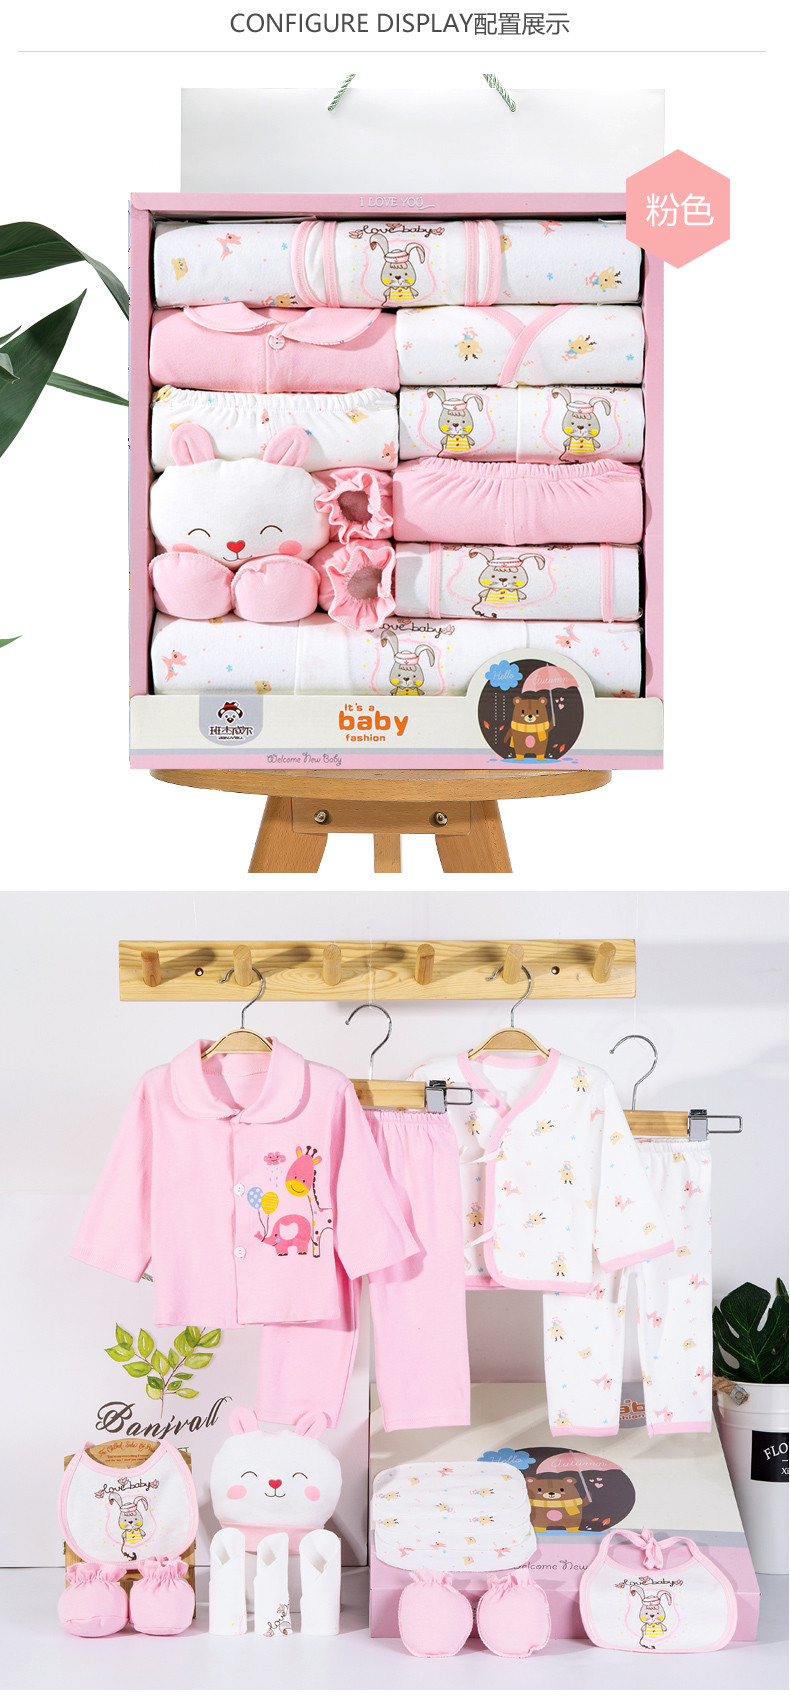 班杰威尔/banjvall 新生儿套装婴儿衣服纯棉刚出生宝宝衣服用品满月礼品婴儿礼盒四季灰小兔系列